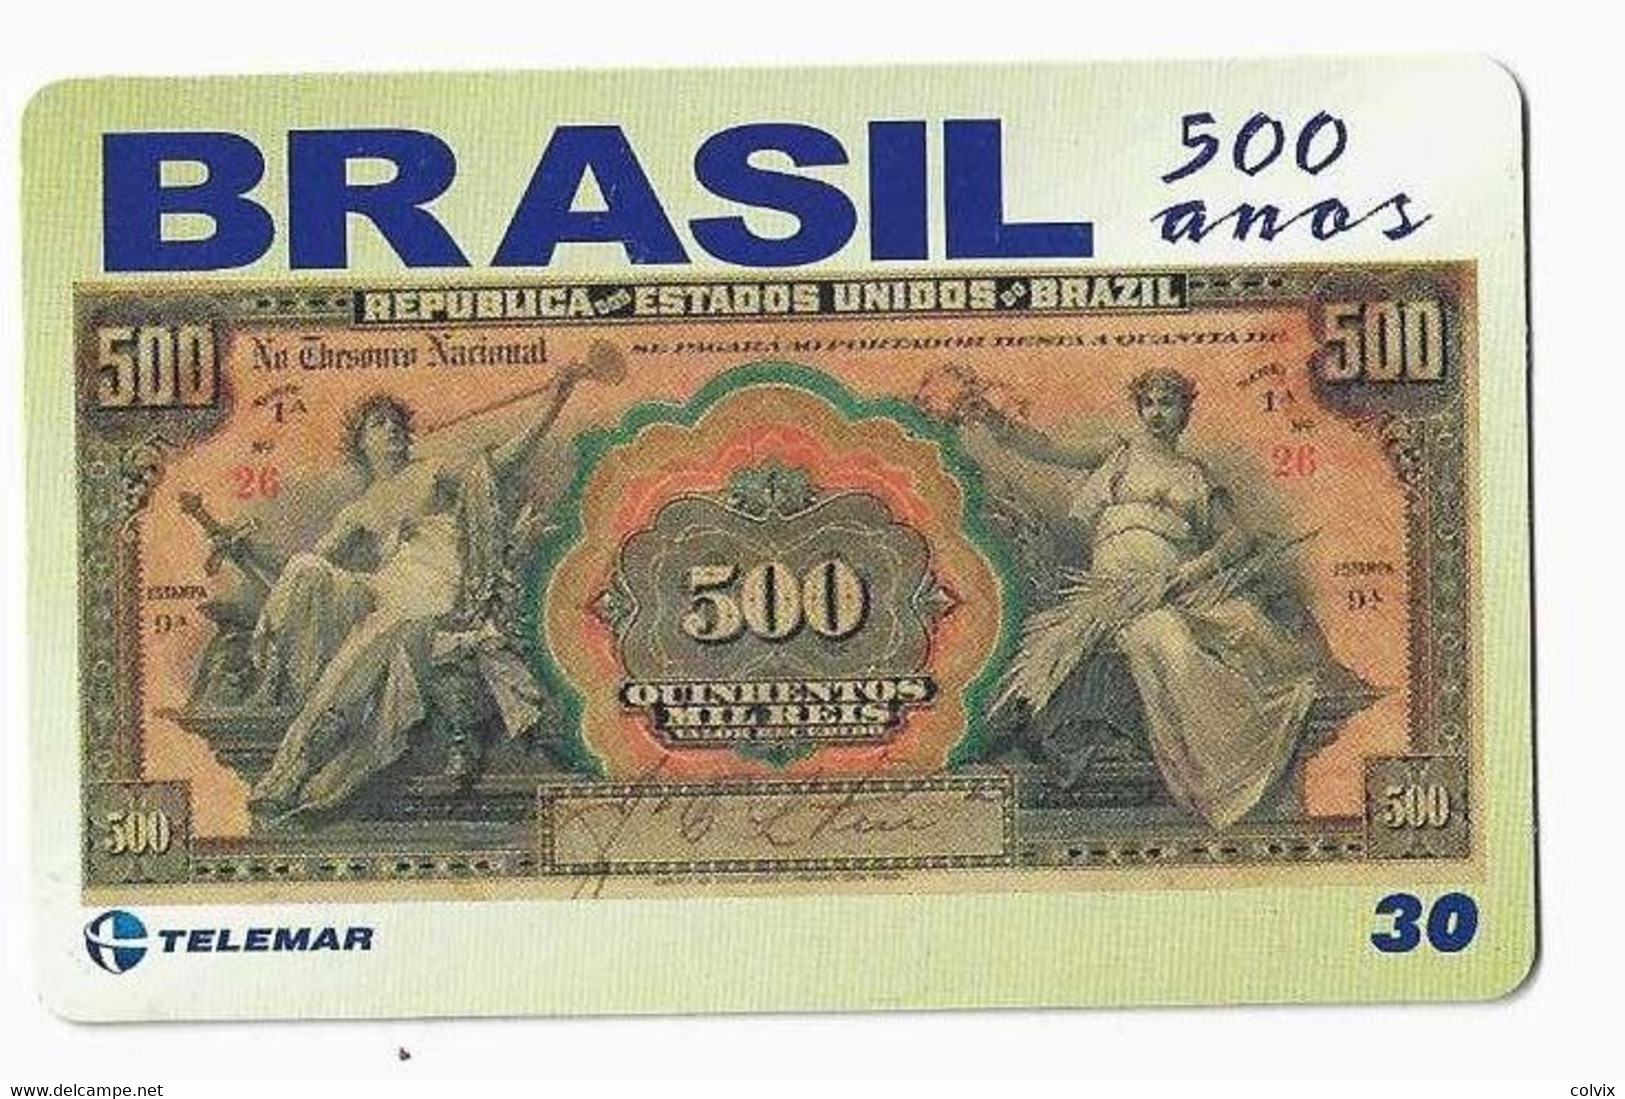 BRESIL TELECARTE BILLET DE BANQUE 1908 - Timbres & Monnaies